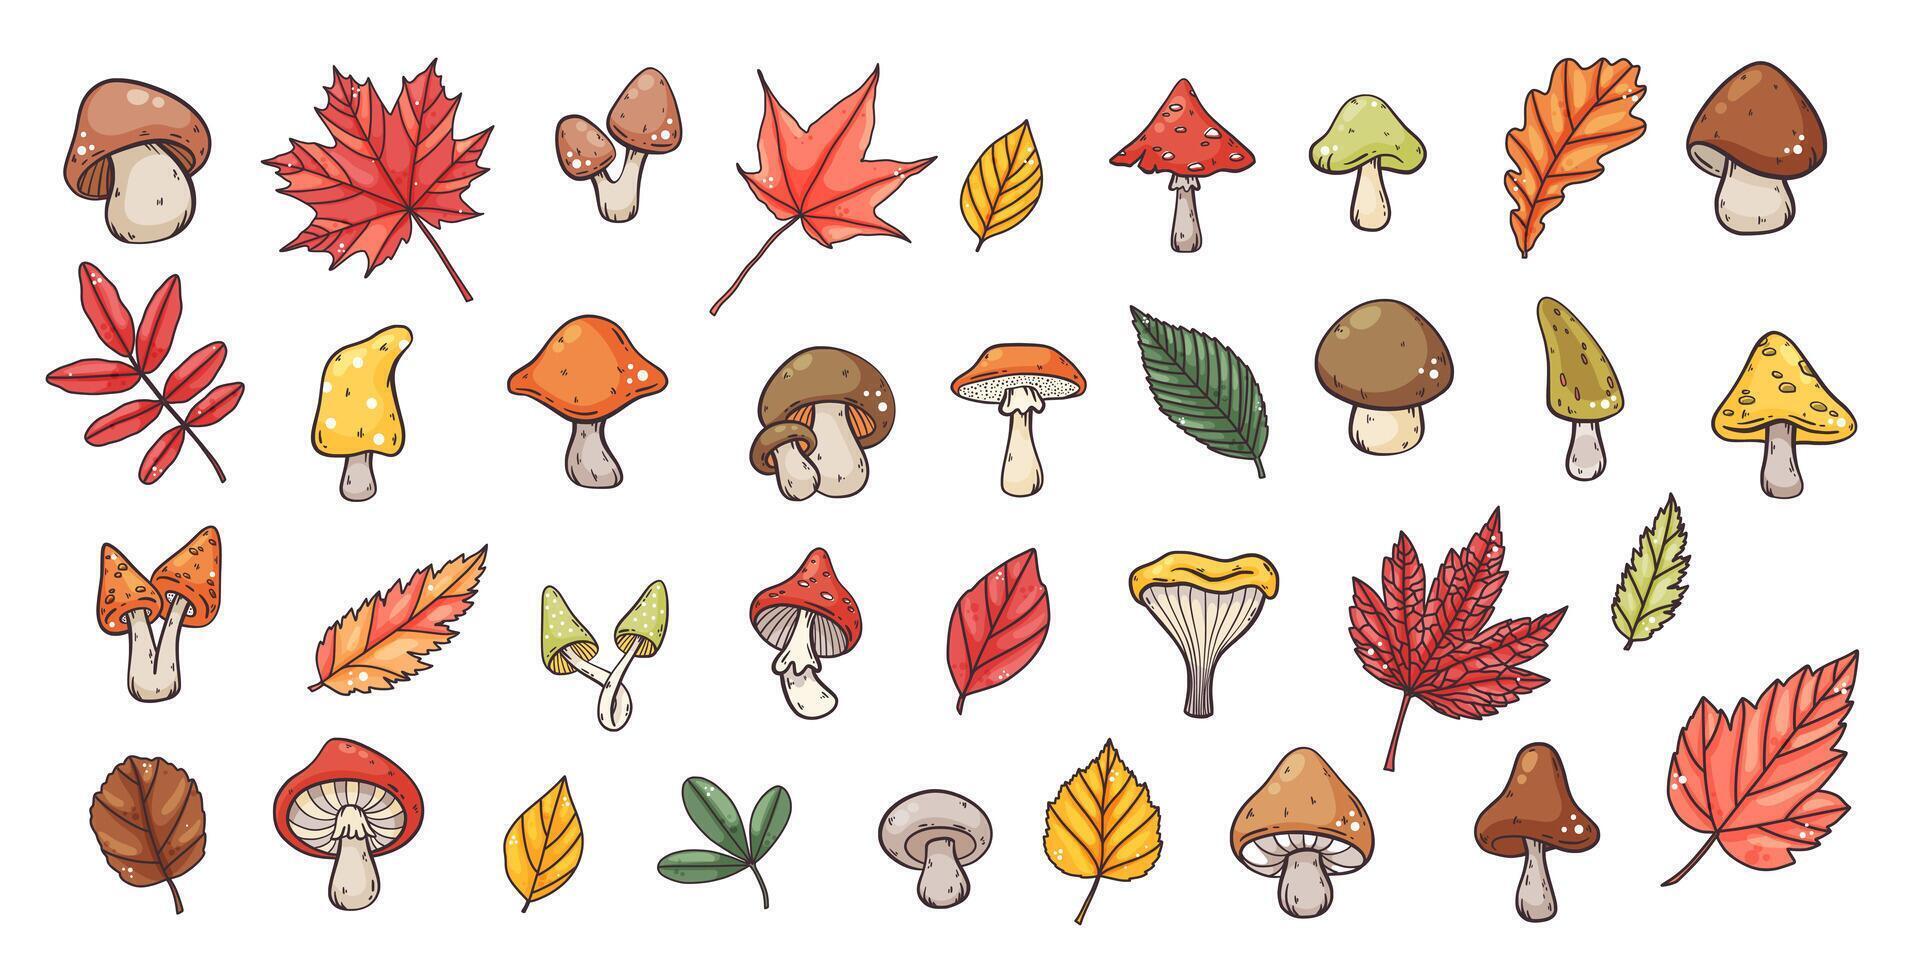 groß einstellen von Hand gezeichnet Herbst Pilze und Blätter Elemente, Hand gezeichnet süß Karikatur bunt Stil, Vektor Illustration